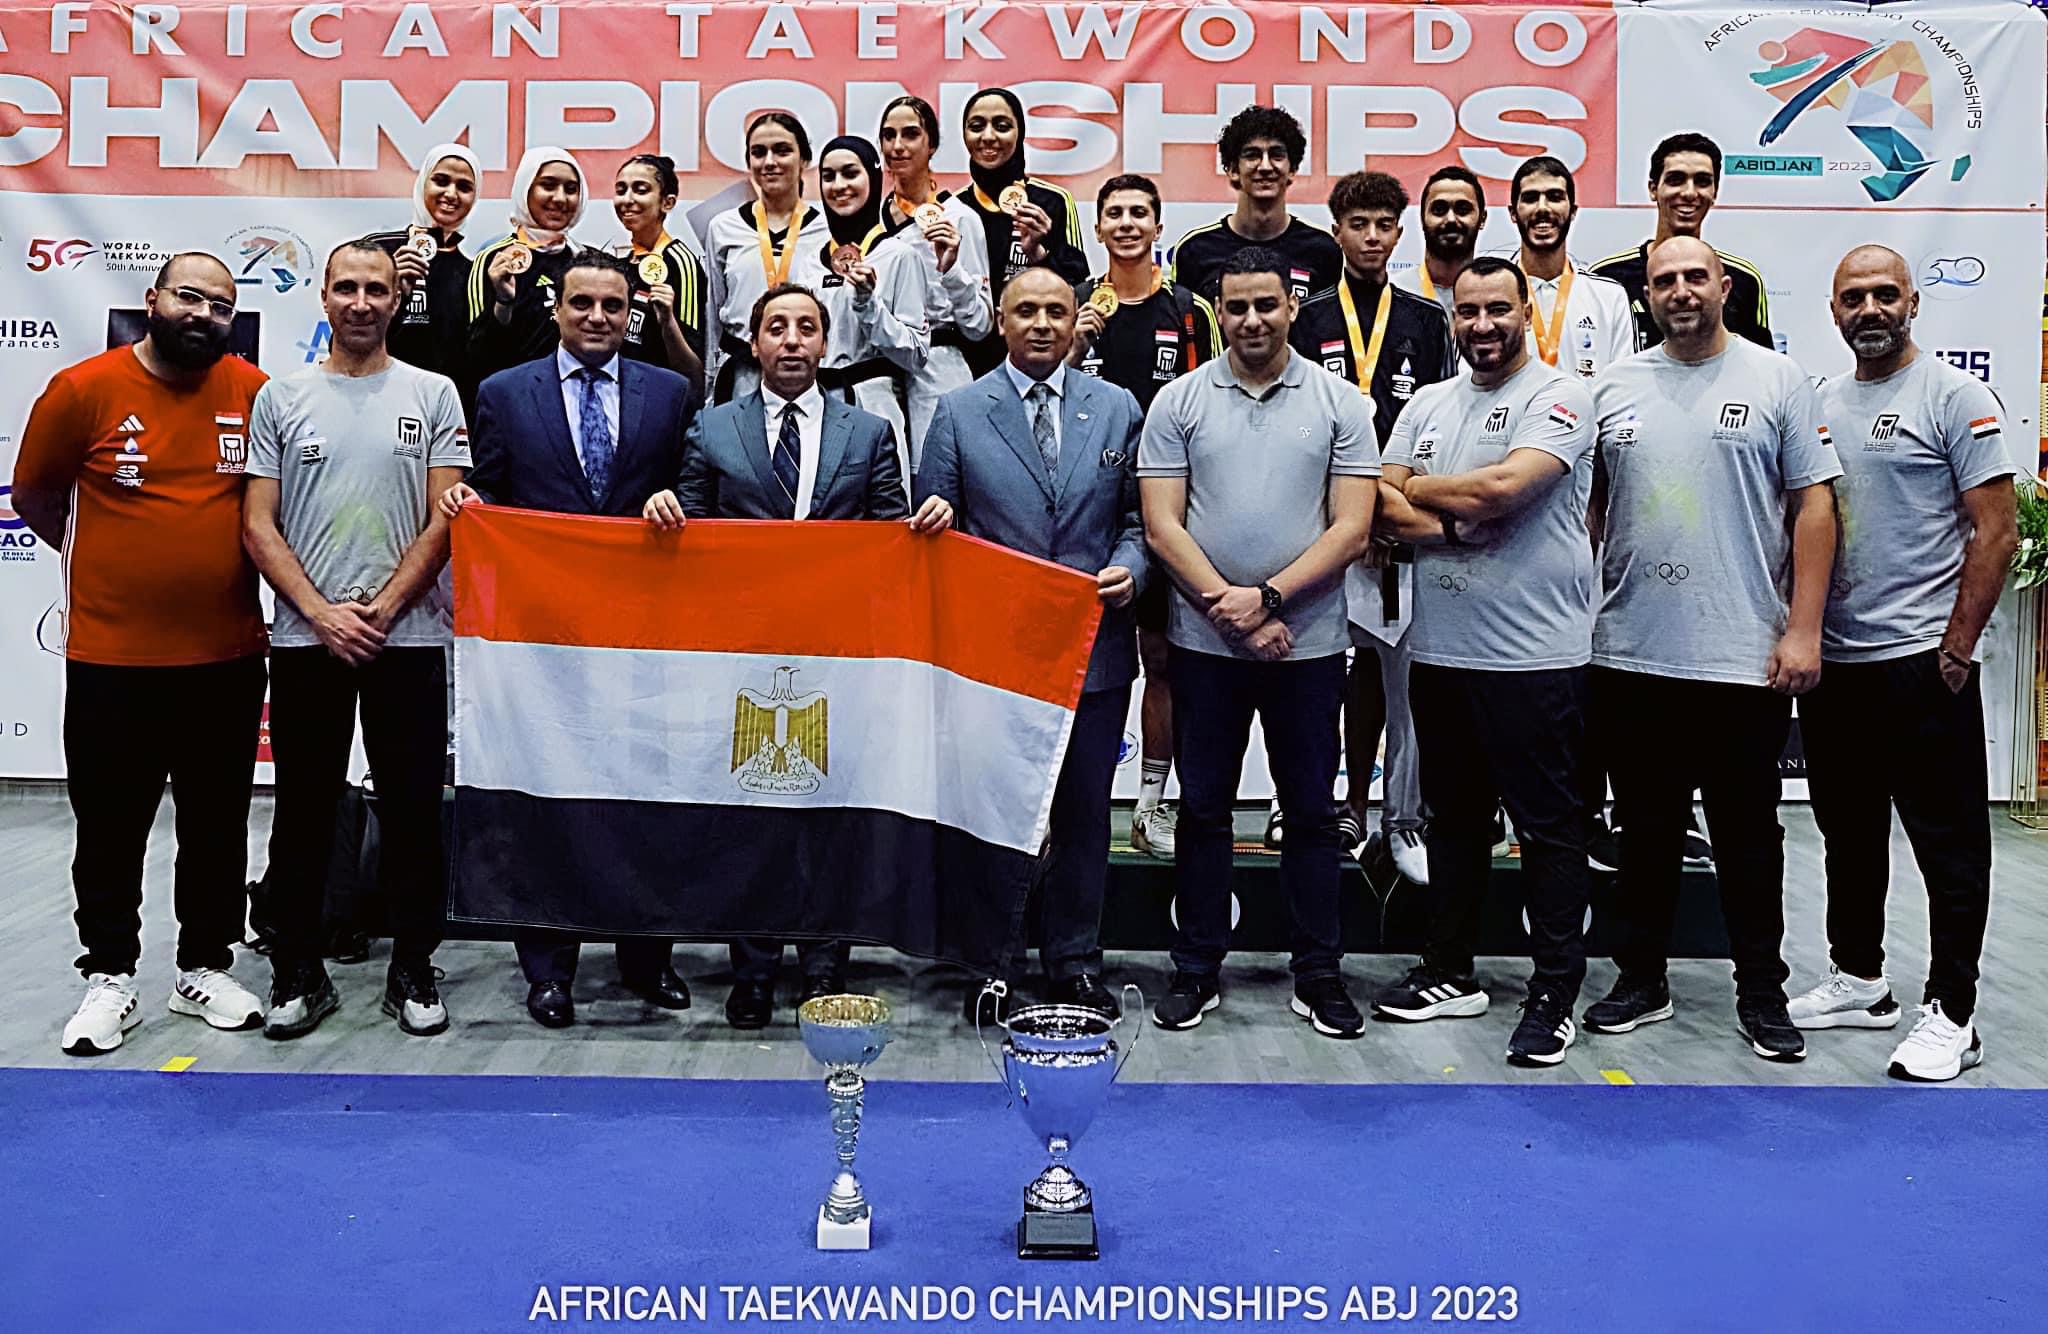 منتخب مصر الأول للتايڪوندو وصيف إفريقيا فى الترتيب العام لأڪبر بطولة رسمية فى القارة السمراء